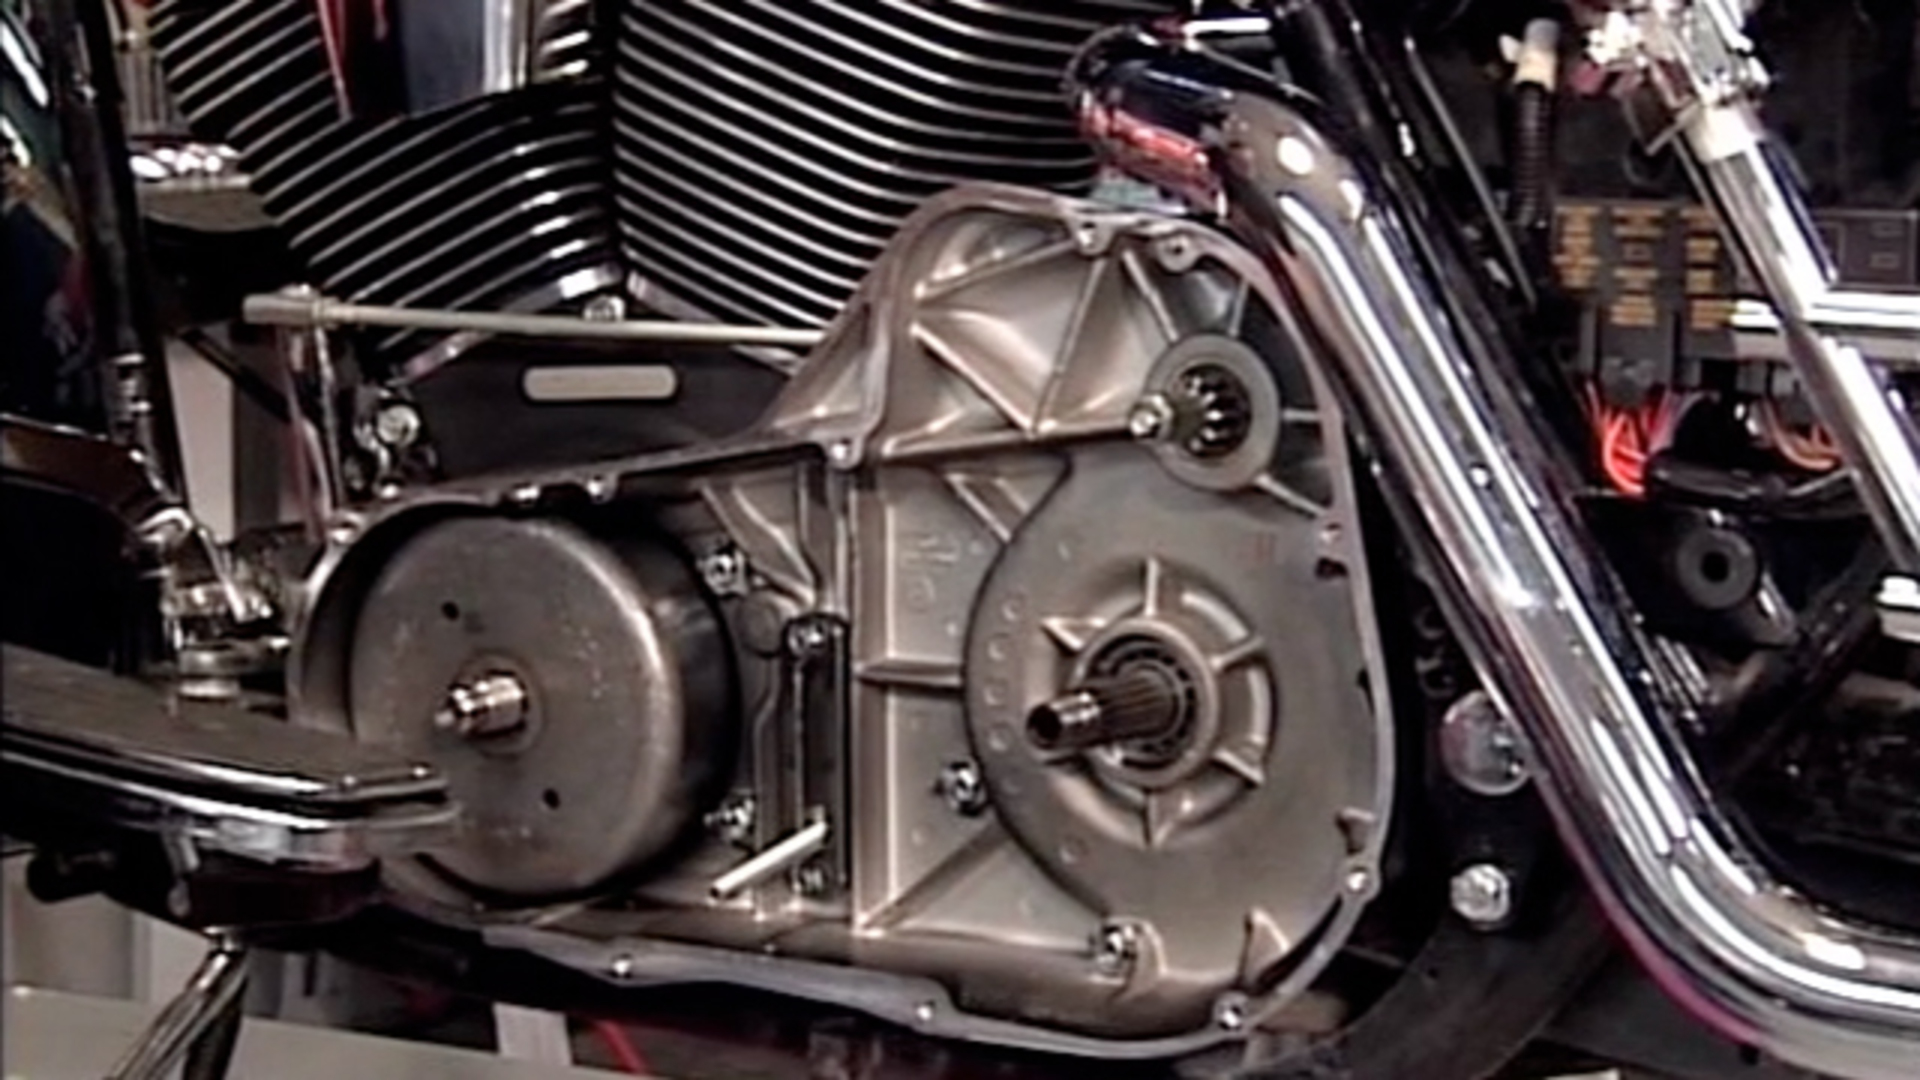 18 Amp Alternator Charging System Kit for Harley Davidson by V-Twin